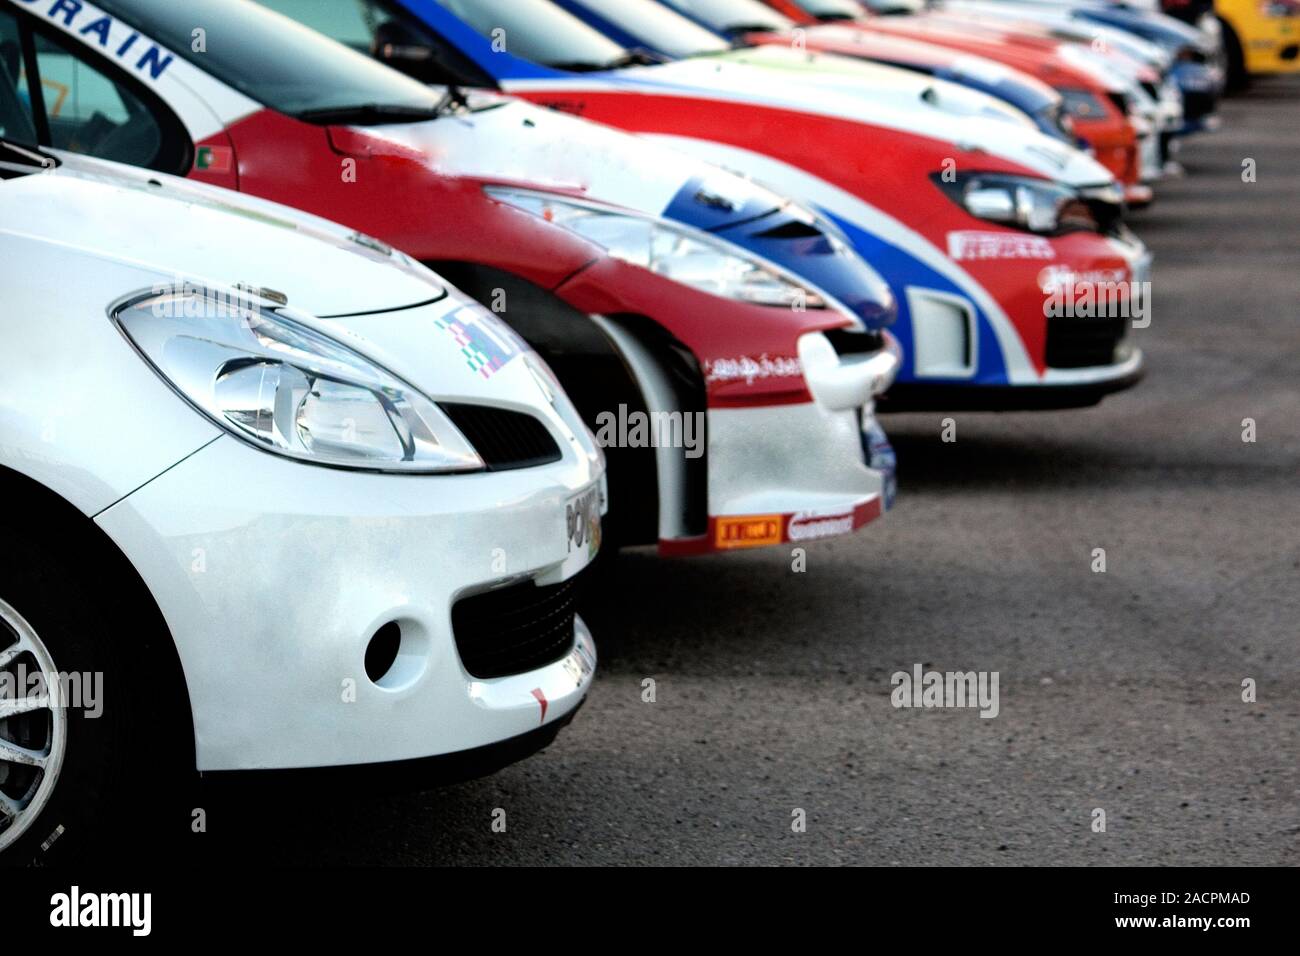 Aligned rally cars Stock Photo